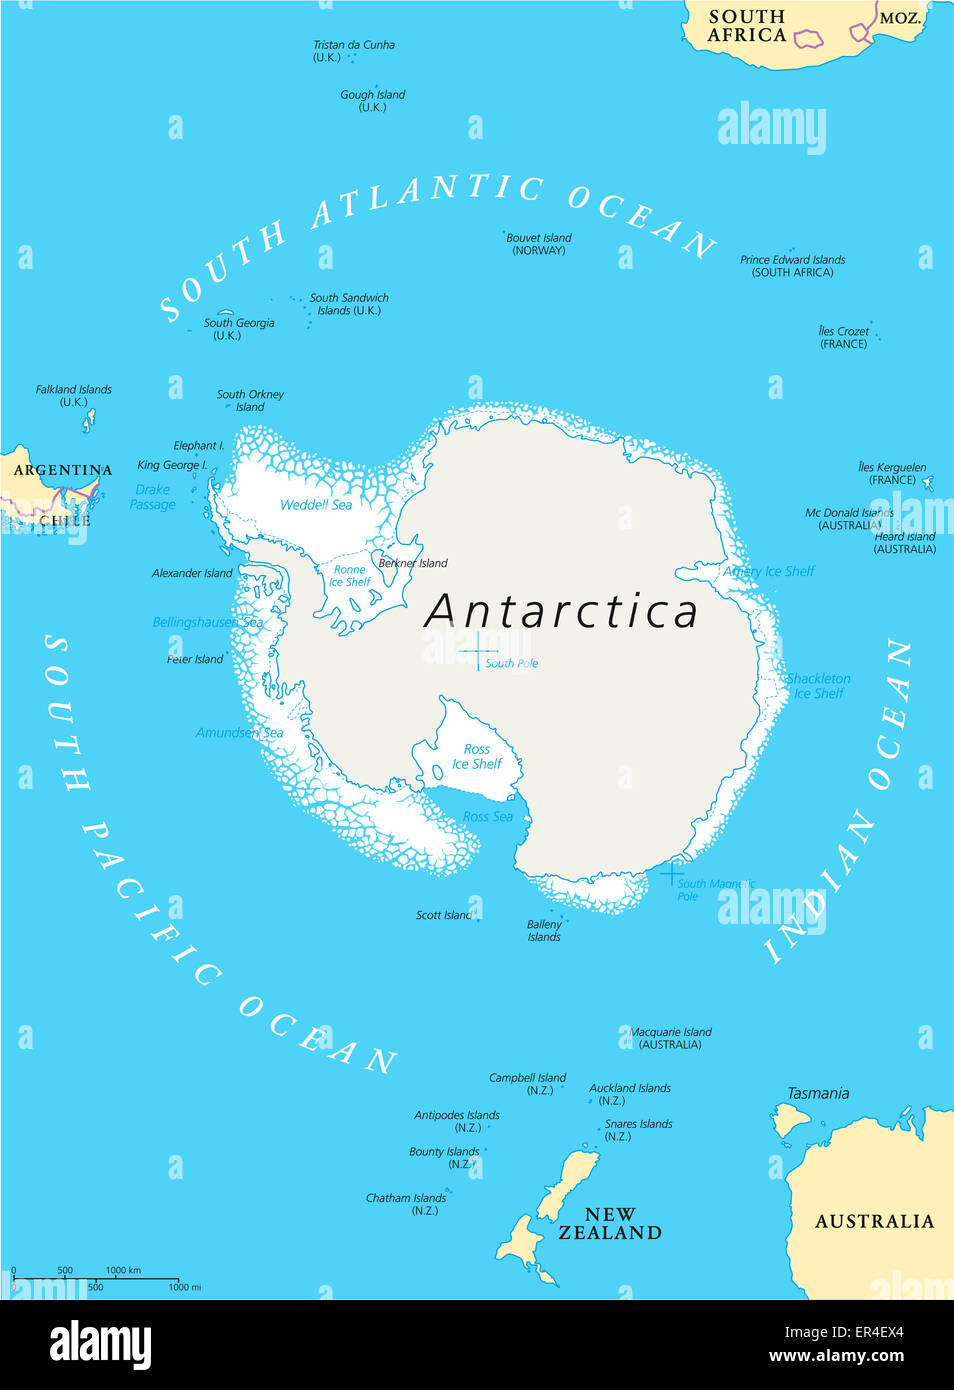 Politische Karte der Antarktis Region mit Südpol, ice Shelfs und Inseln. Englische Beschriftung und Skalierung. Abbildung. Stockfoto